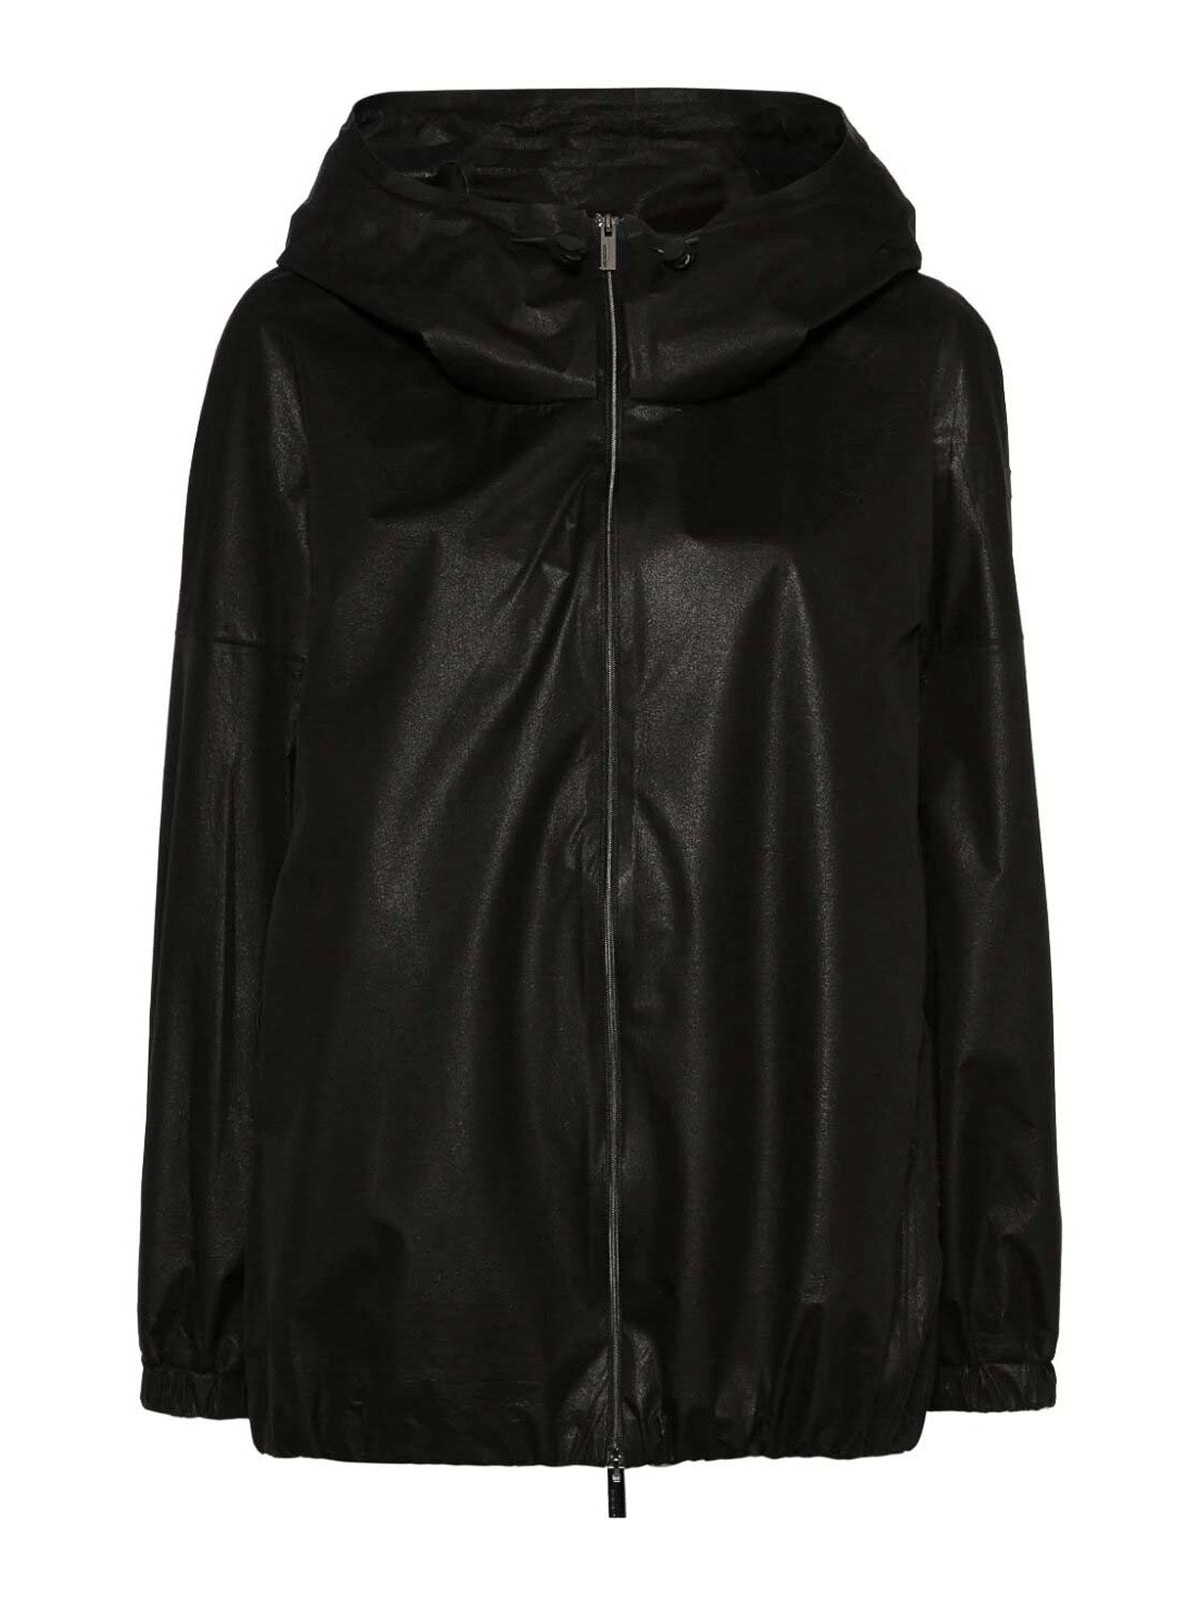 Rrd Roberto Ricci Designs Velo Metal Jacket Over In Black